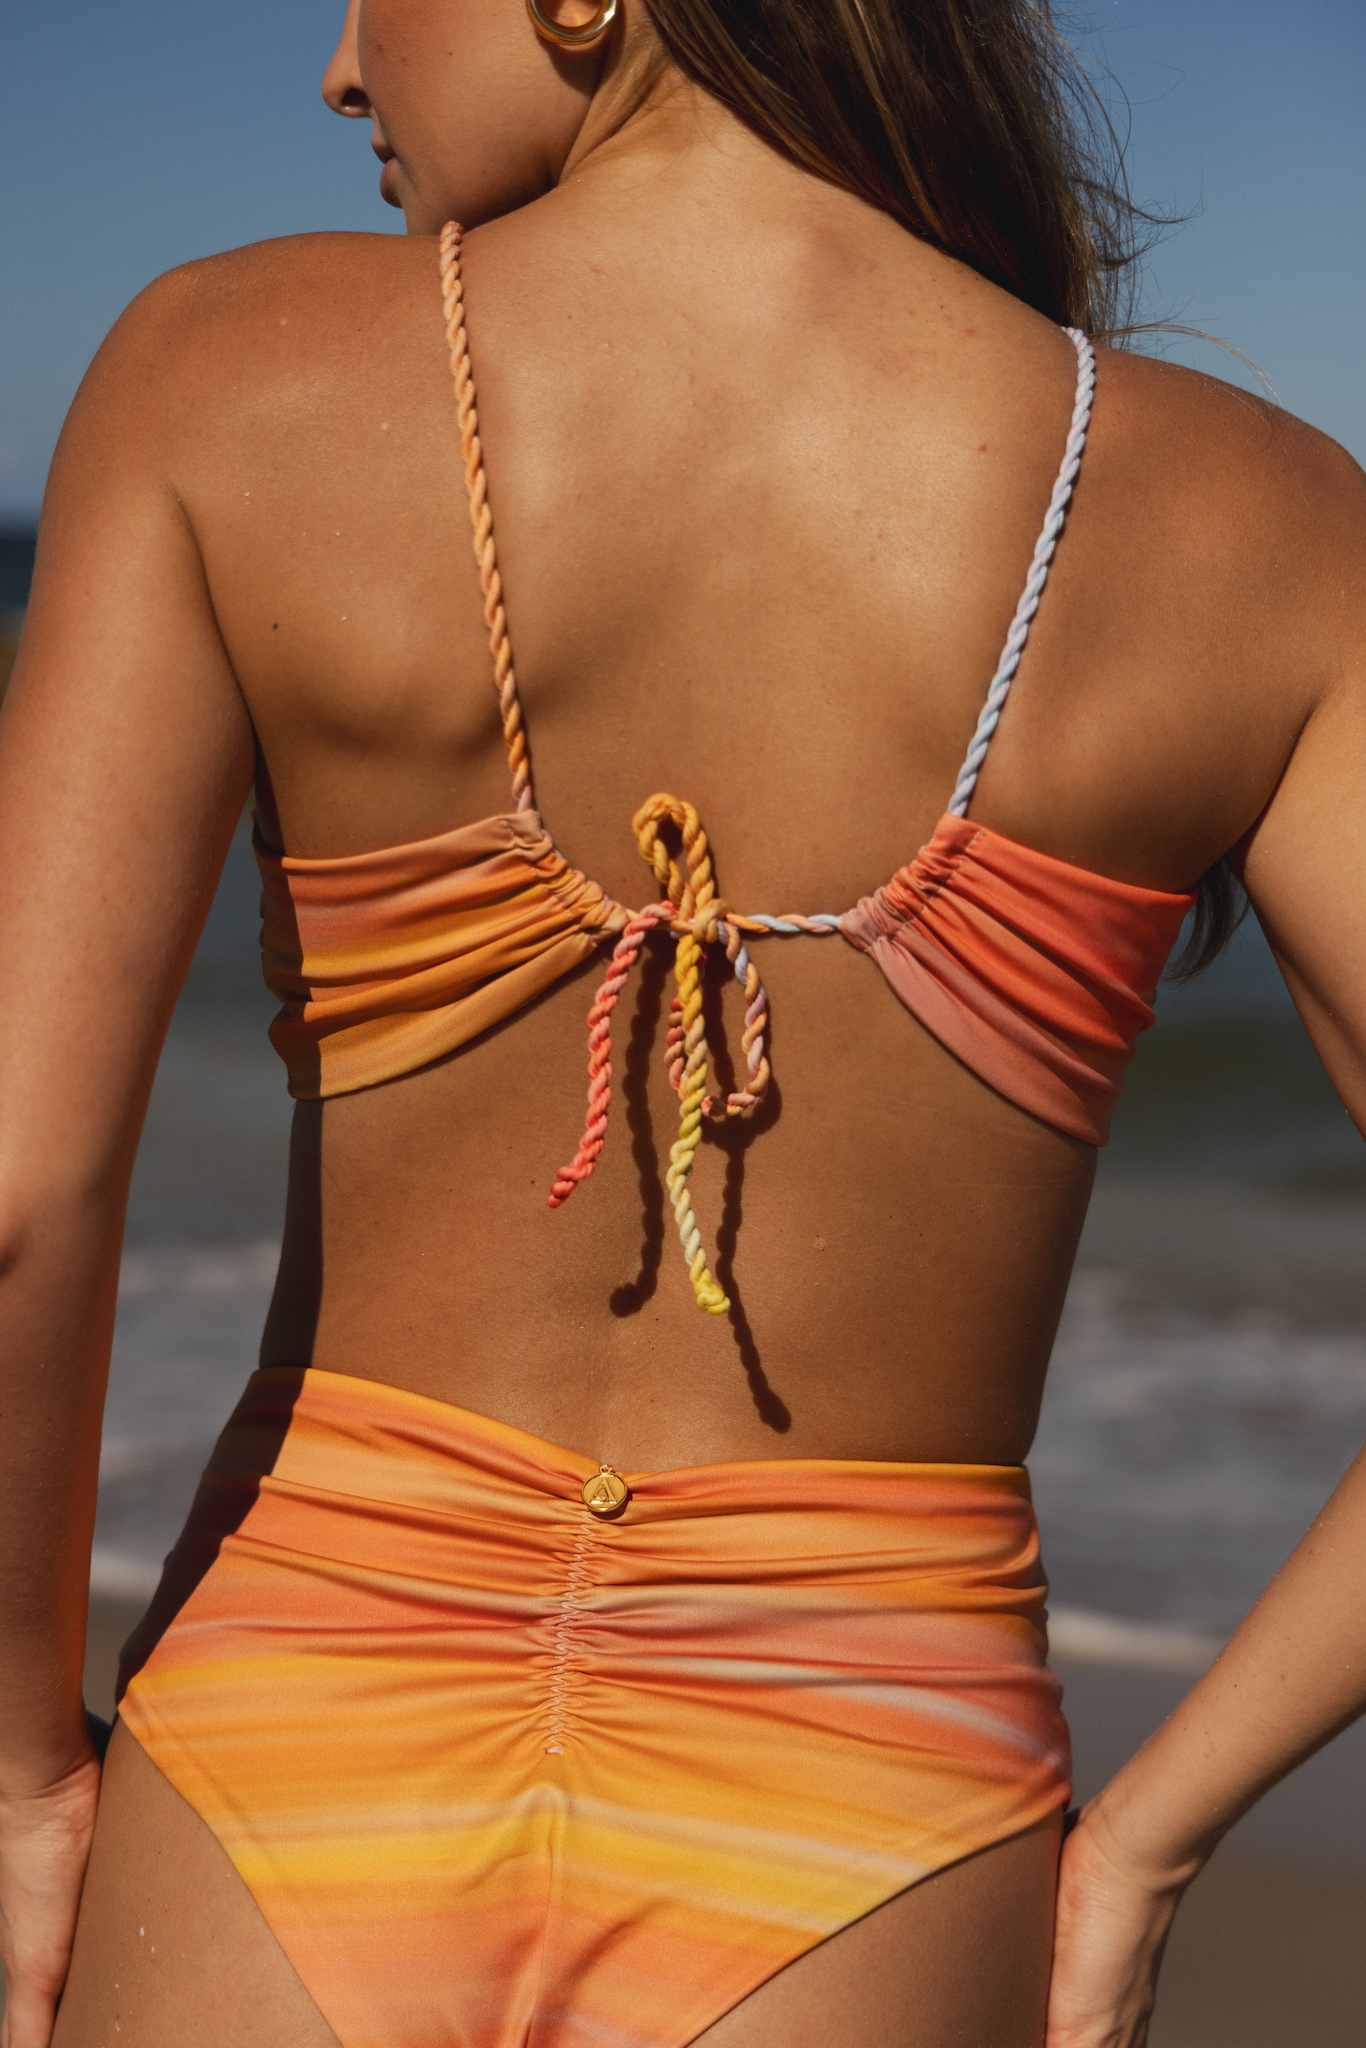 Back view of model in bikini